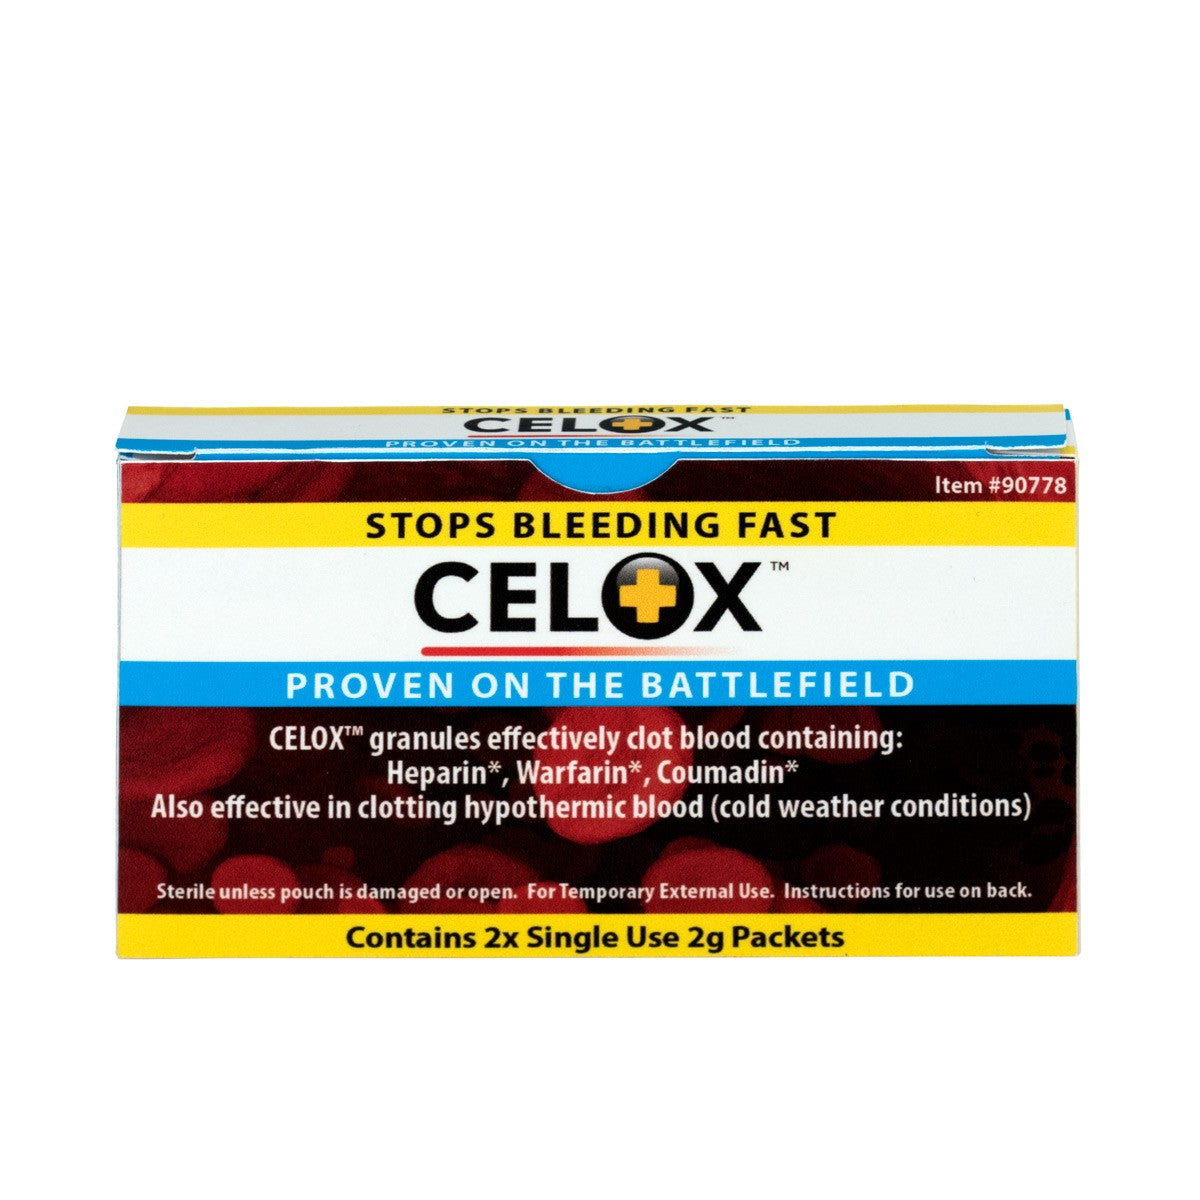 Celox 2g Packs, 2 Per Box - W-90778